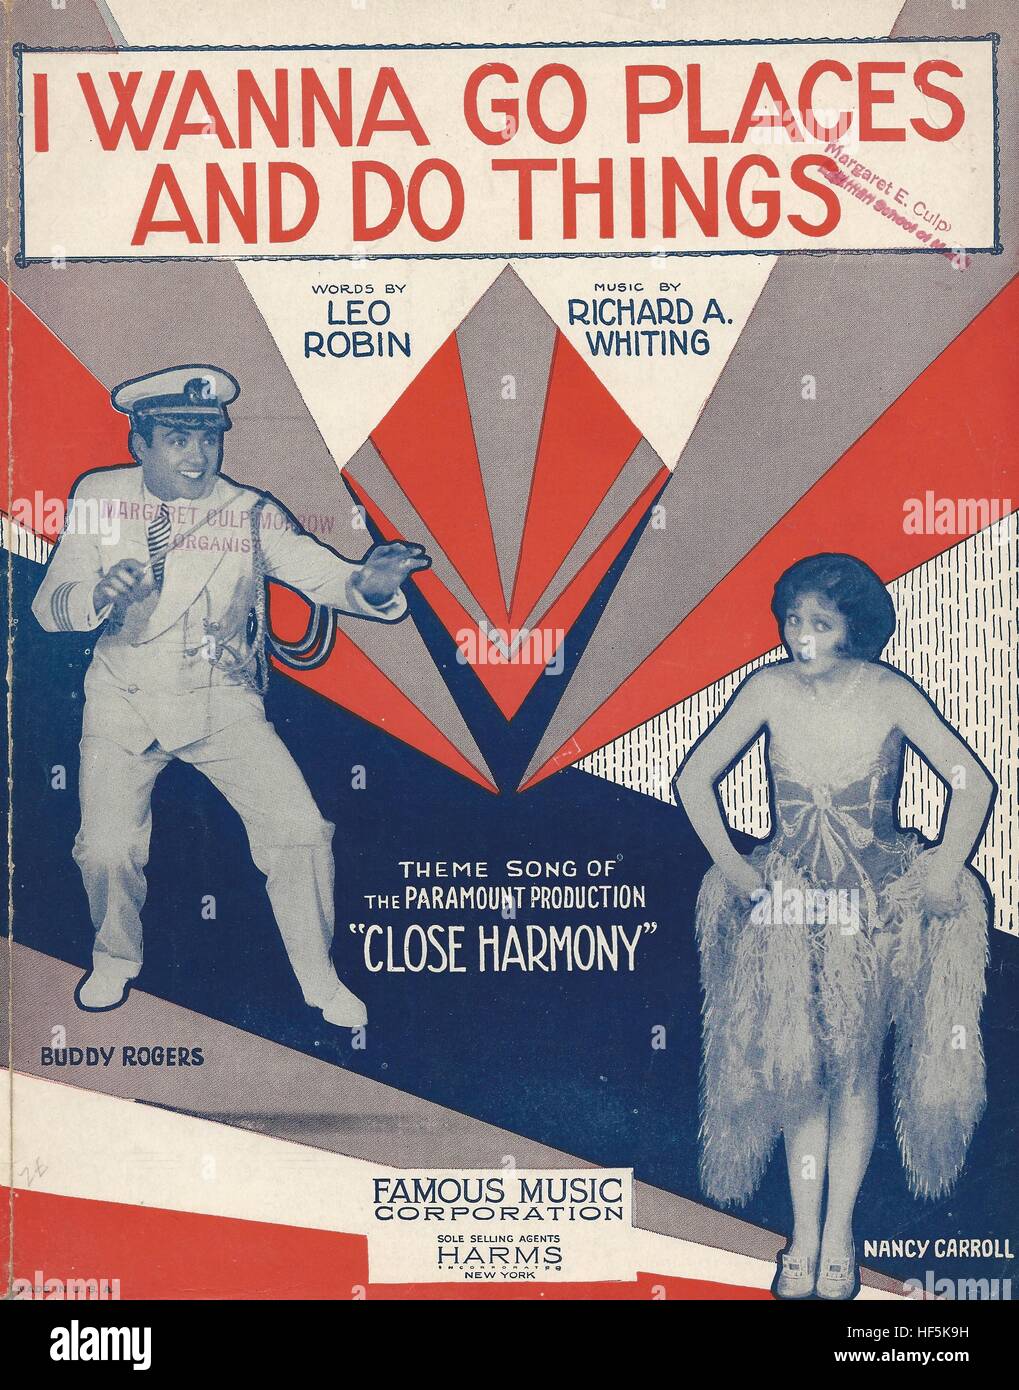 "Quiero llegar a lugares y hacer cosas" desde 1929 película "estrecha armonía' tapa de partituras Foto de stock